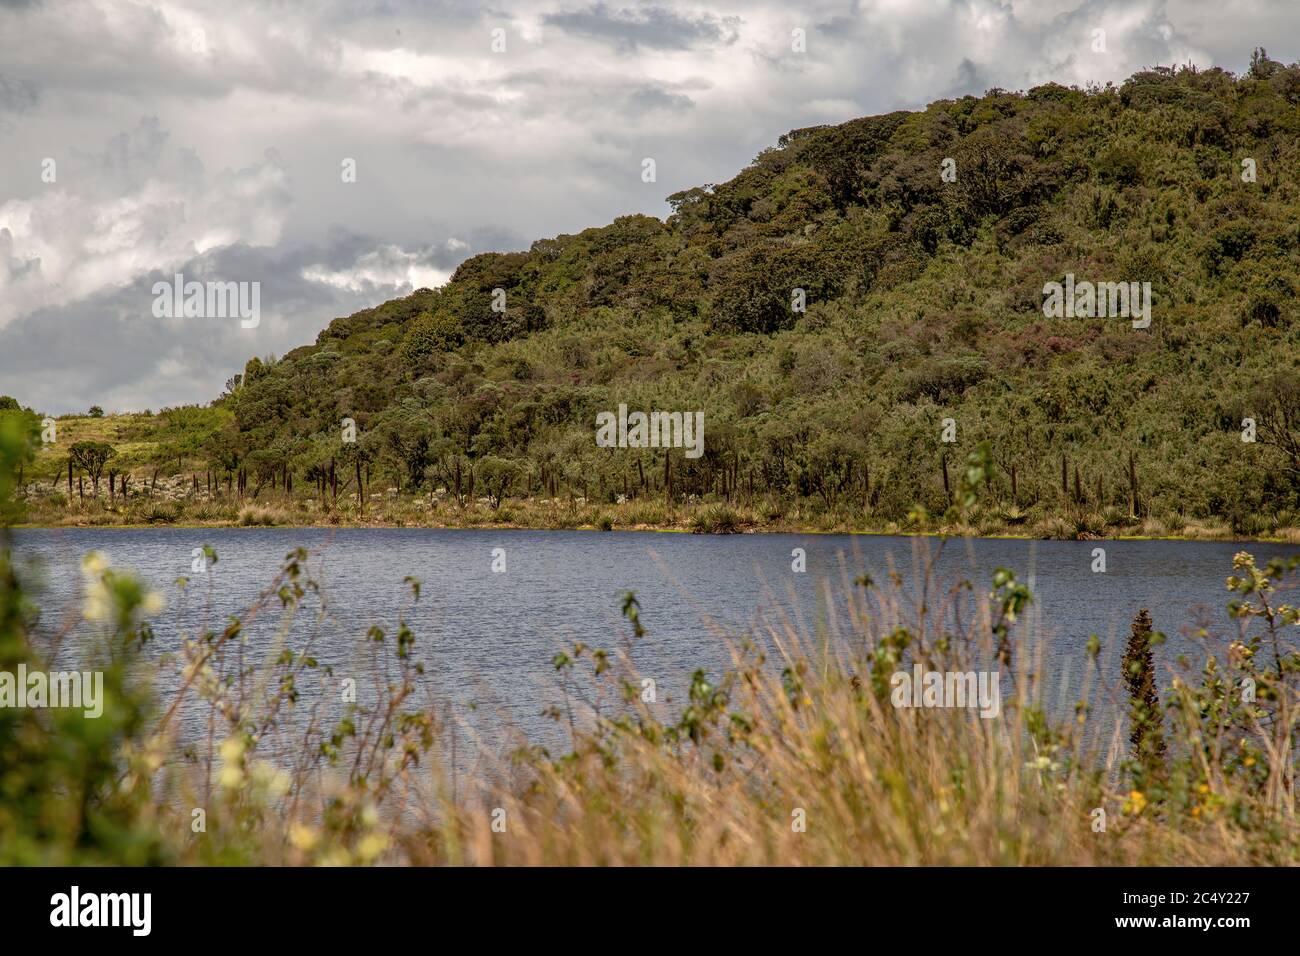 Vista panorámica de la Laguna Verde, un lago natural en el páramo de Teatinos, en las tierras altas de las montañas andinas del centro de Colombia. Foto de stock